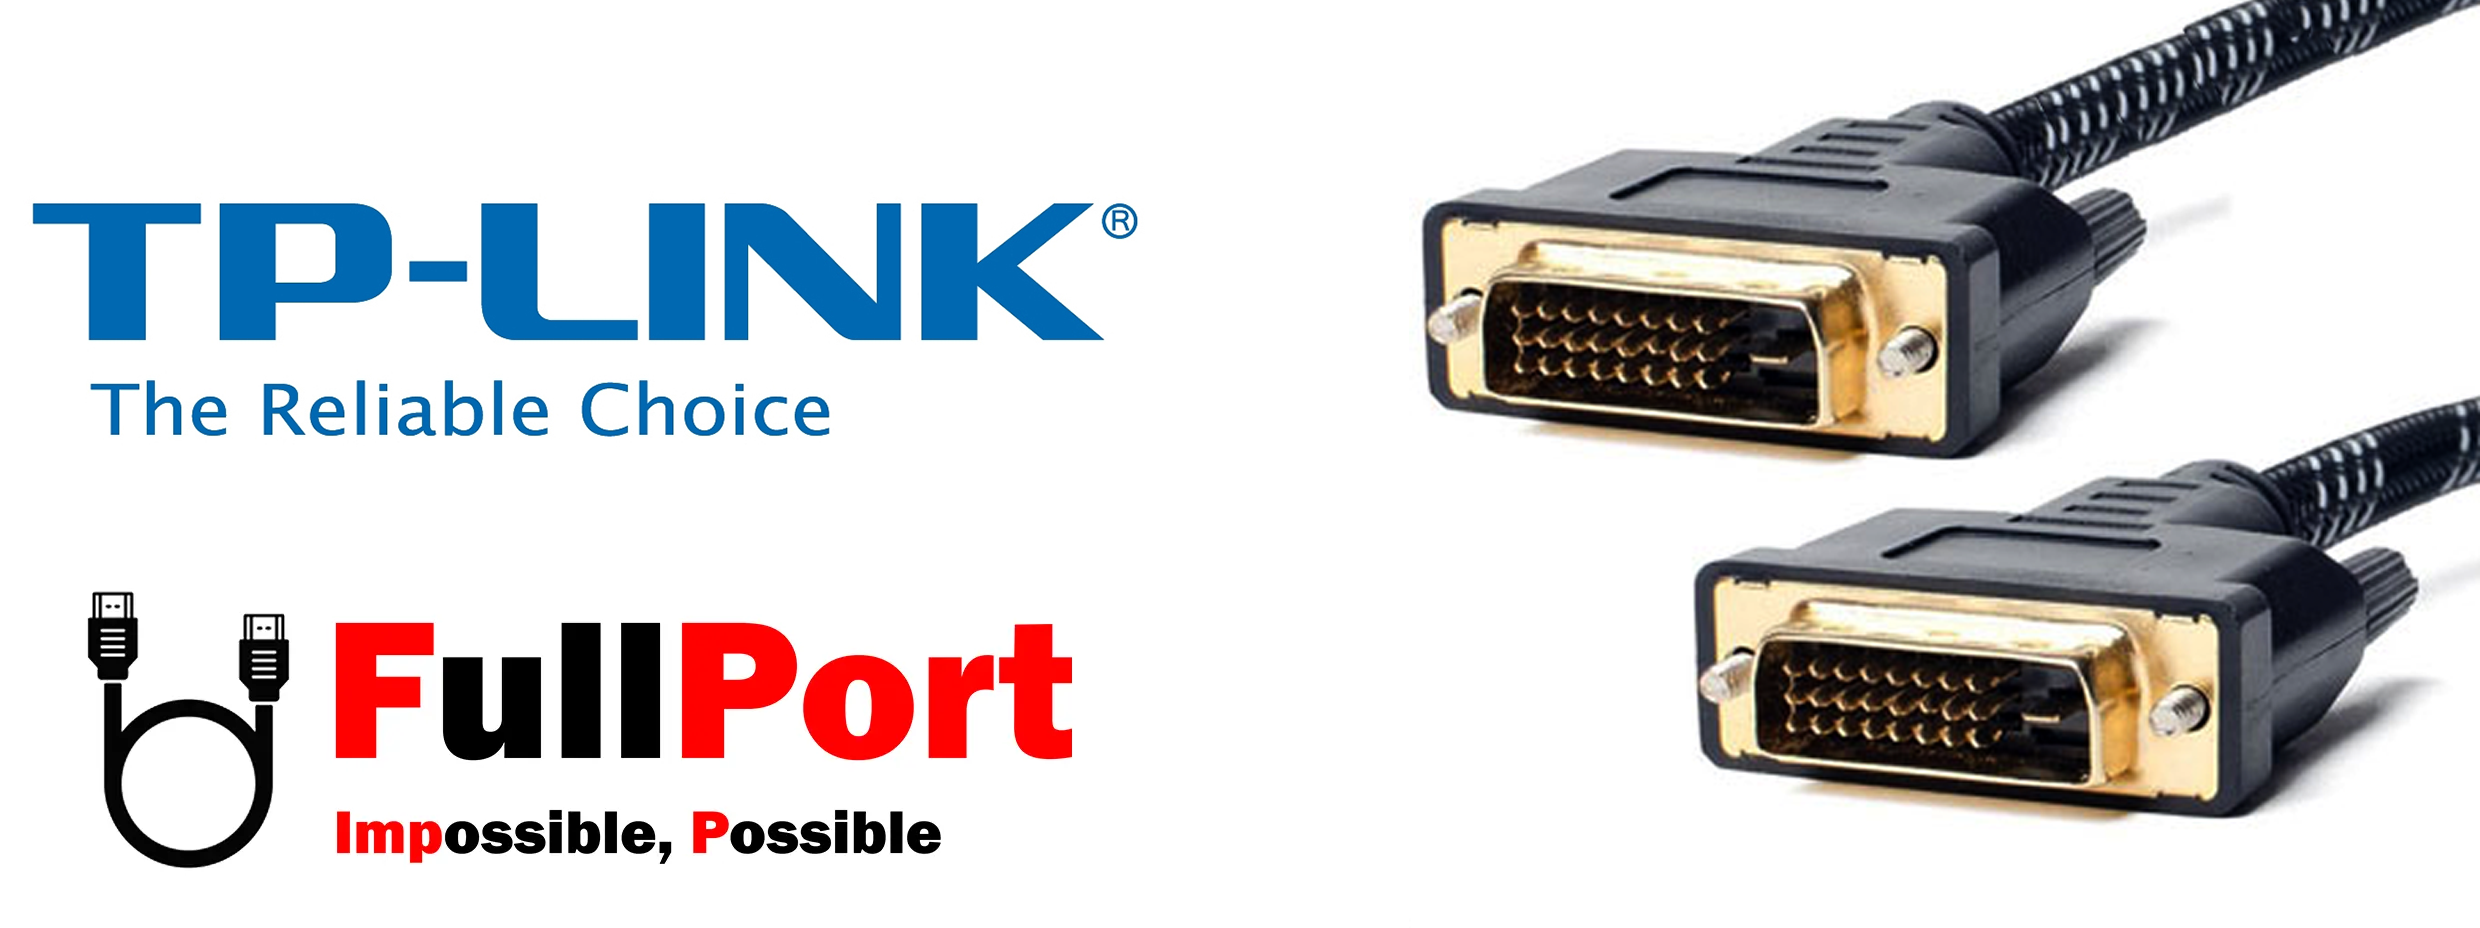 خرید کابل DVI-D (24+1) Dual Link تی پی لینک | TP-Link با گارانتی تست و تضمین اصالت کالا از فروشگاه تخصصی کابل اینترنتی فول پورت